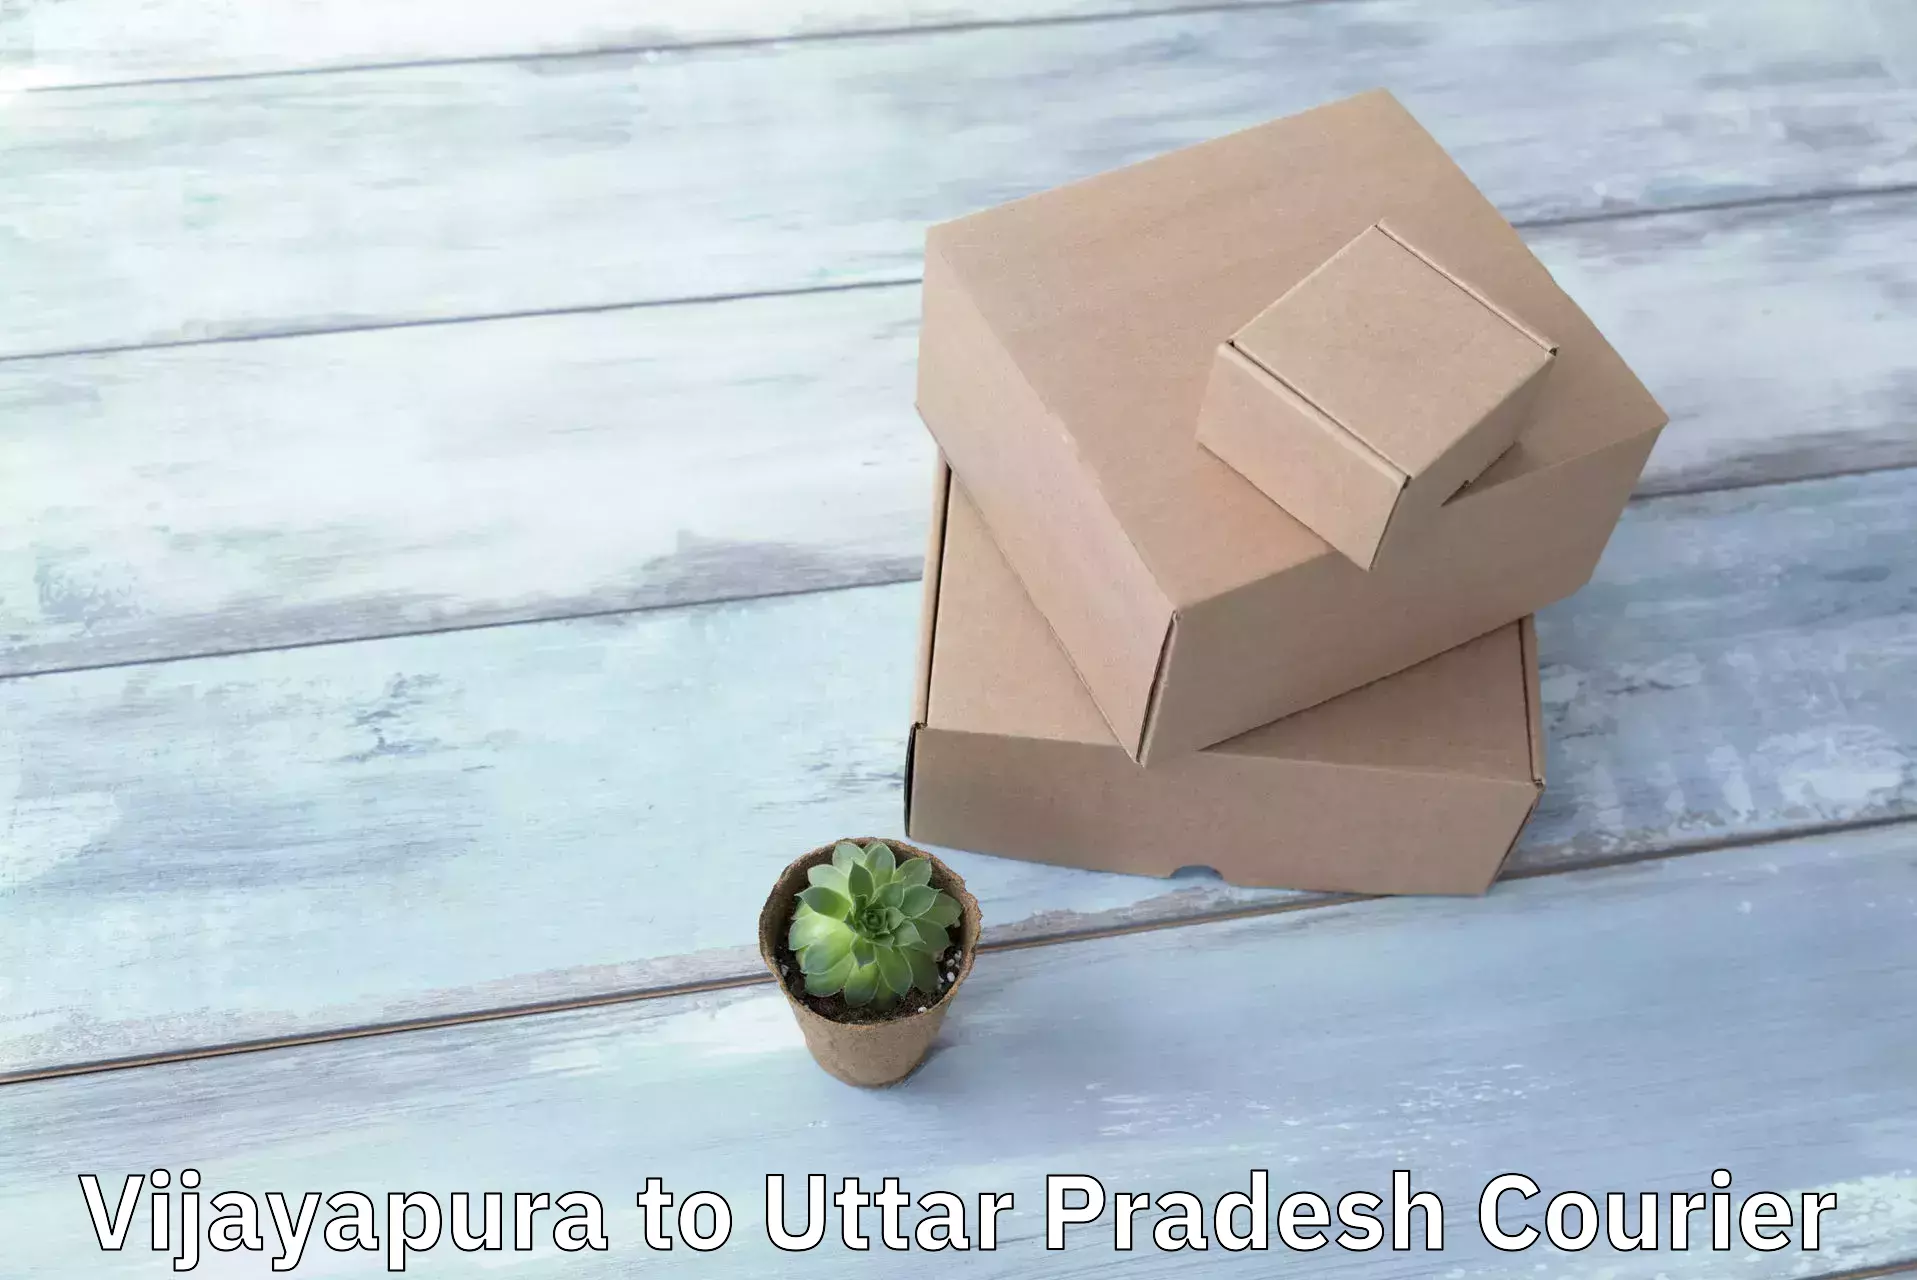 Large package courier Vijayapura to Rajesultanpur